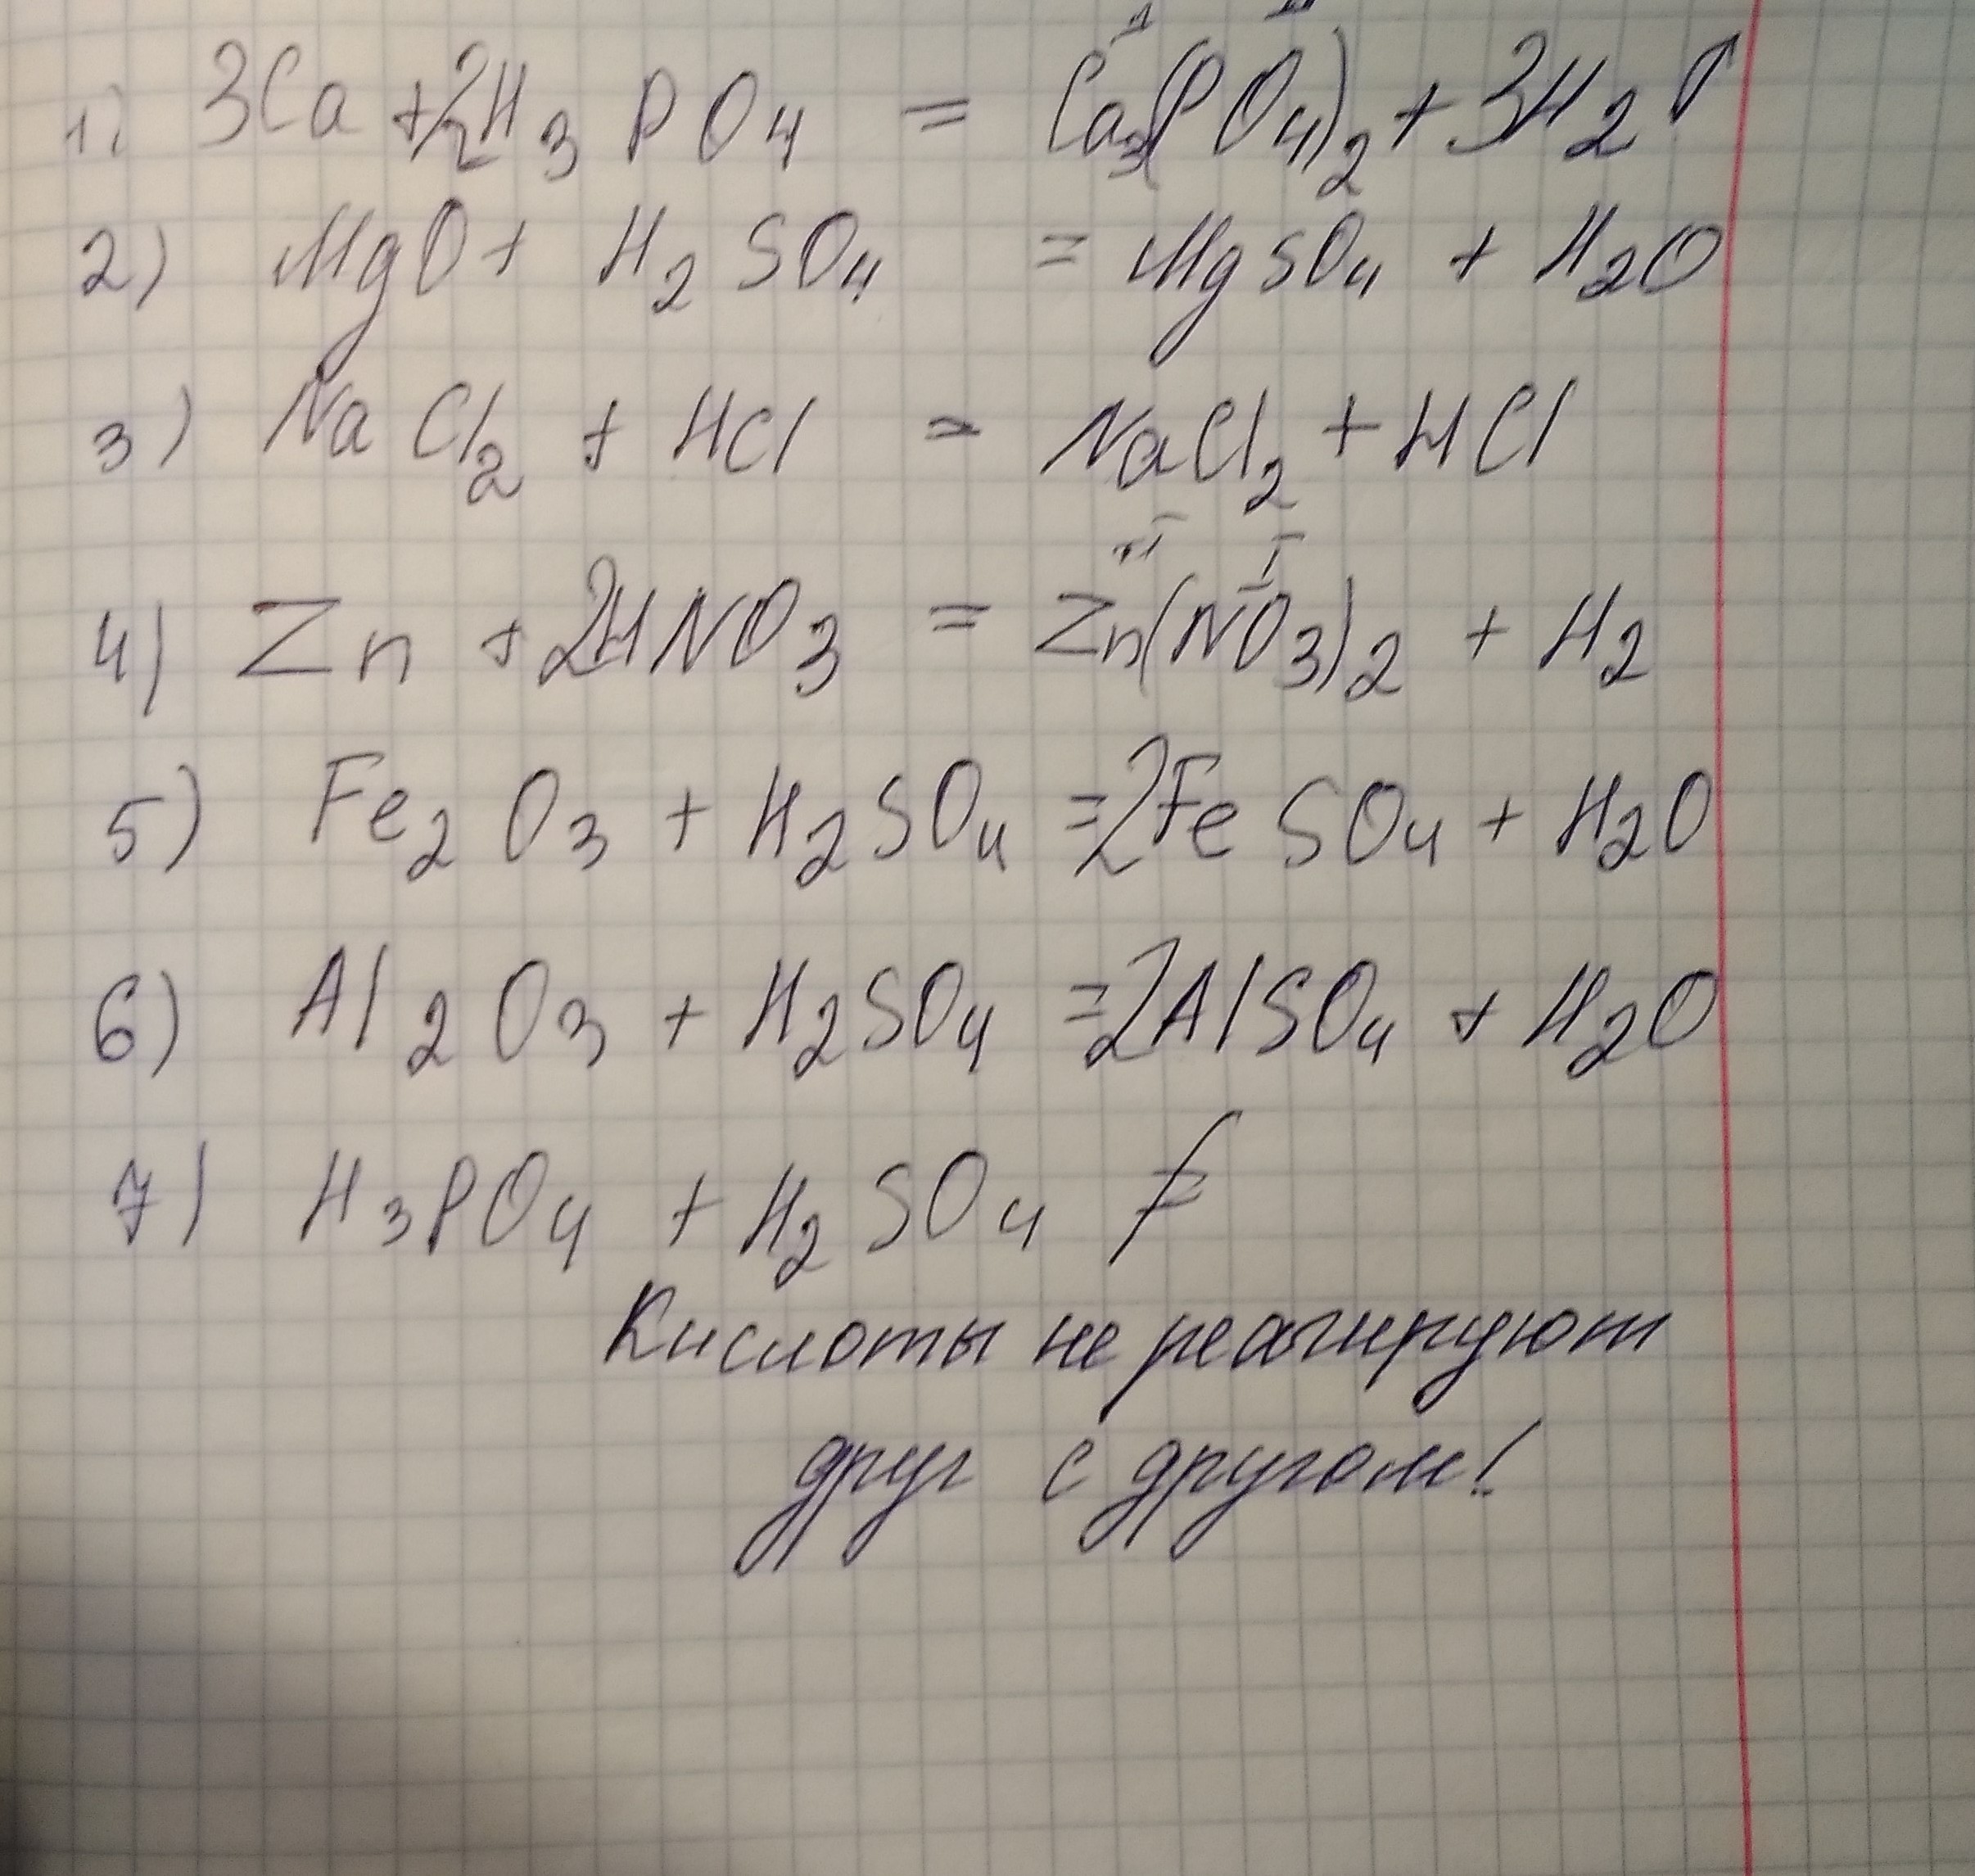 Напишите реакцию h2so4 zn. CA+h3po4 уравнение. Допишите уравнение реакции h3po4+CA. CA+h3po4. MG+h3po4.